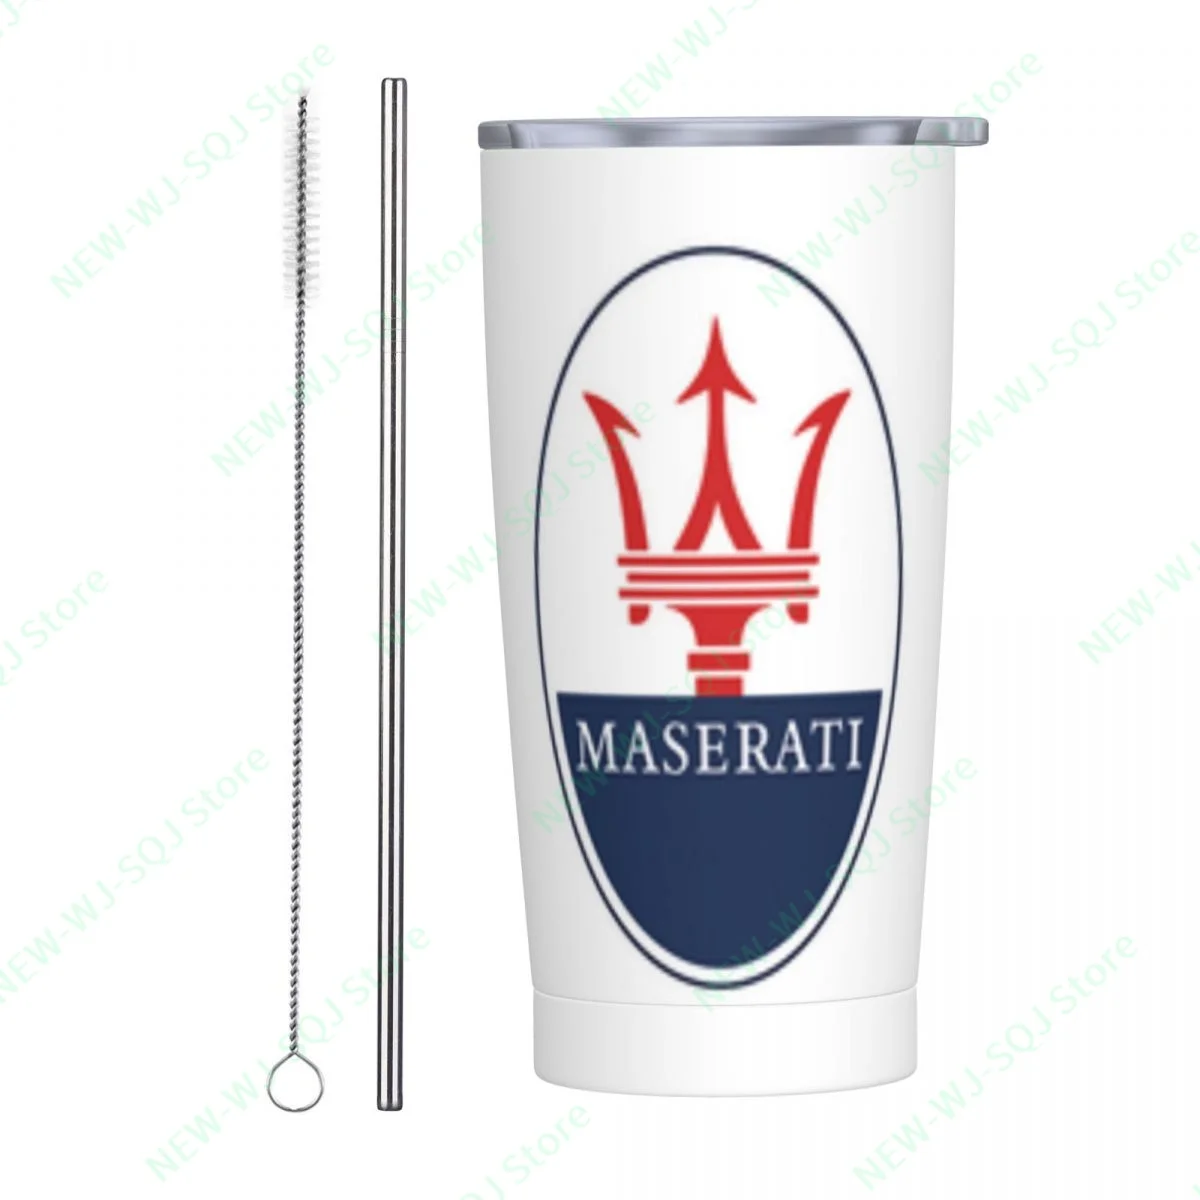 

Кружка с логотипом MASERATI, 20 унций, дорожная кружка, портативные чашки из нержавеющей стали, кружка для путешествий, кружка для кофе, кружка-неваляшка, кружка из нержавеющей стали 20 унций